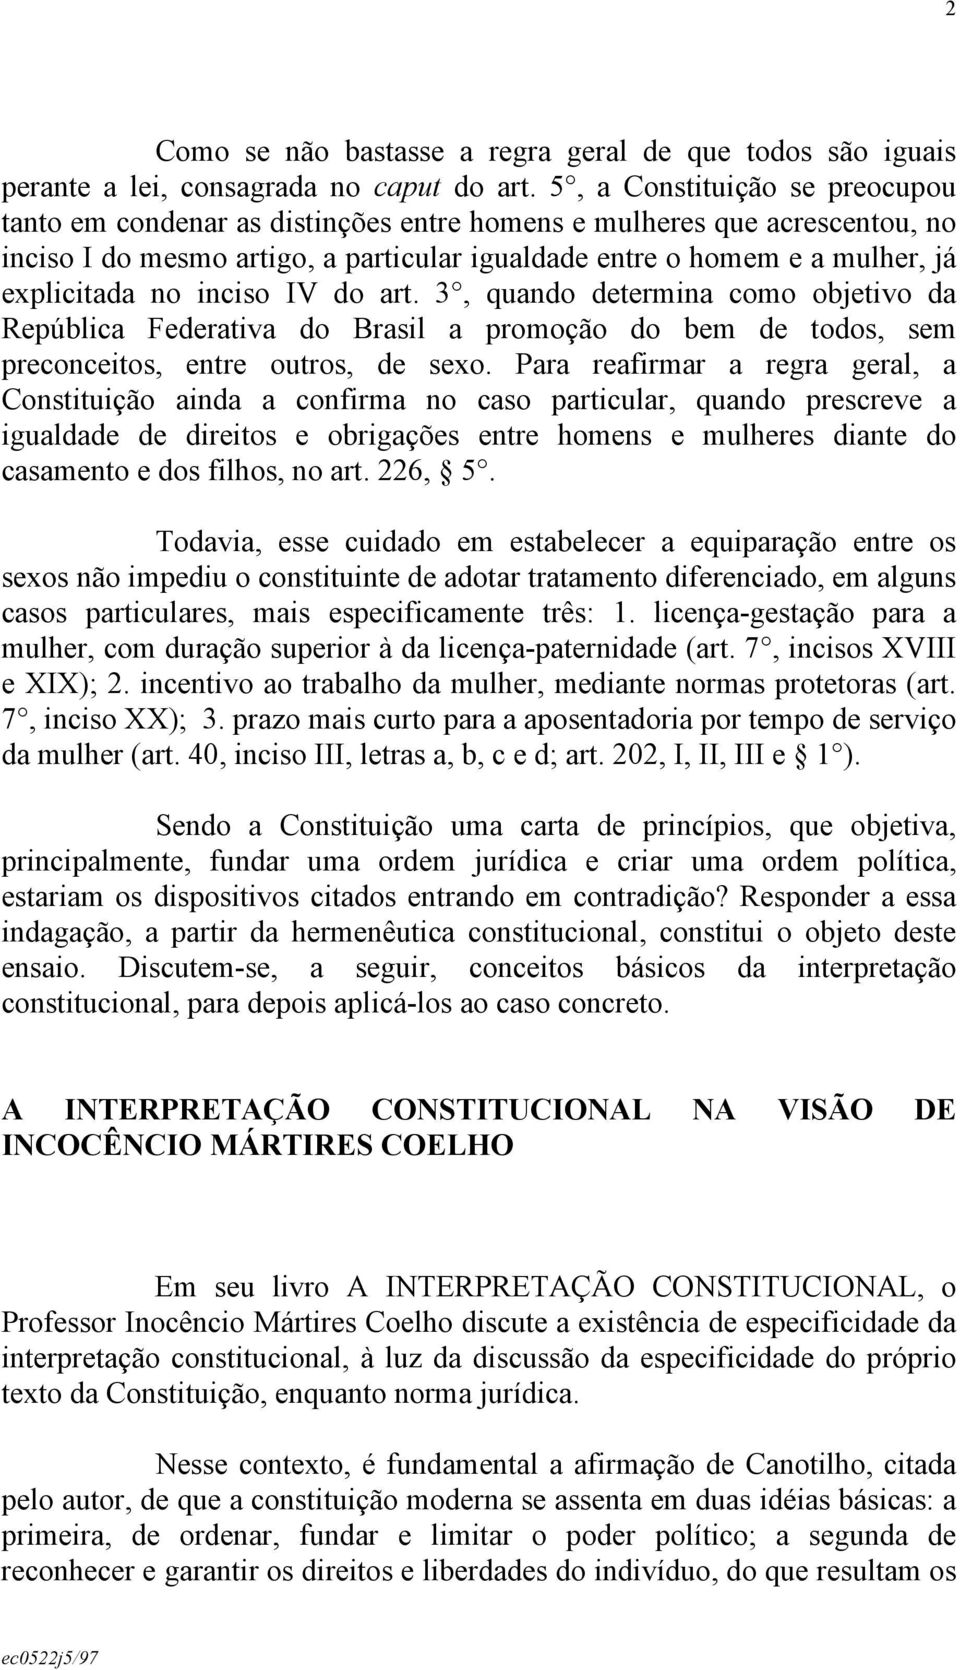 inciso IV do art. 3, quando determina como objetivo da República Federativa do Brasil a promoção do bem de todos, sem preconceitos, entre outros, de sexo.